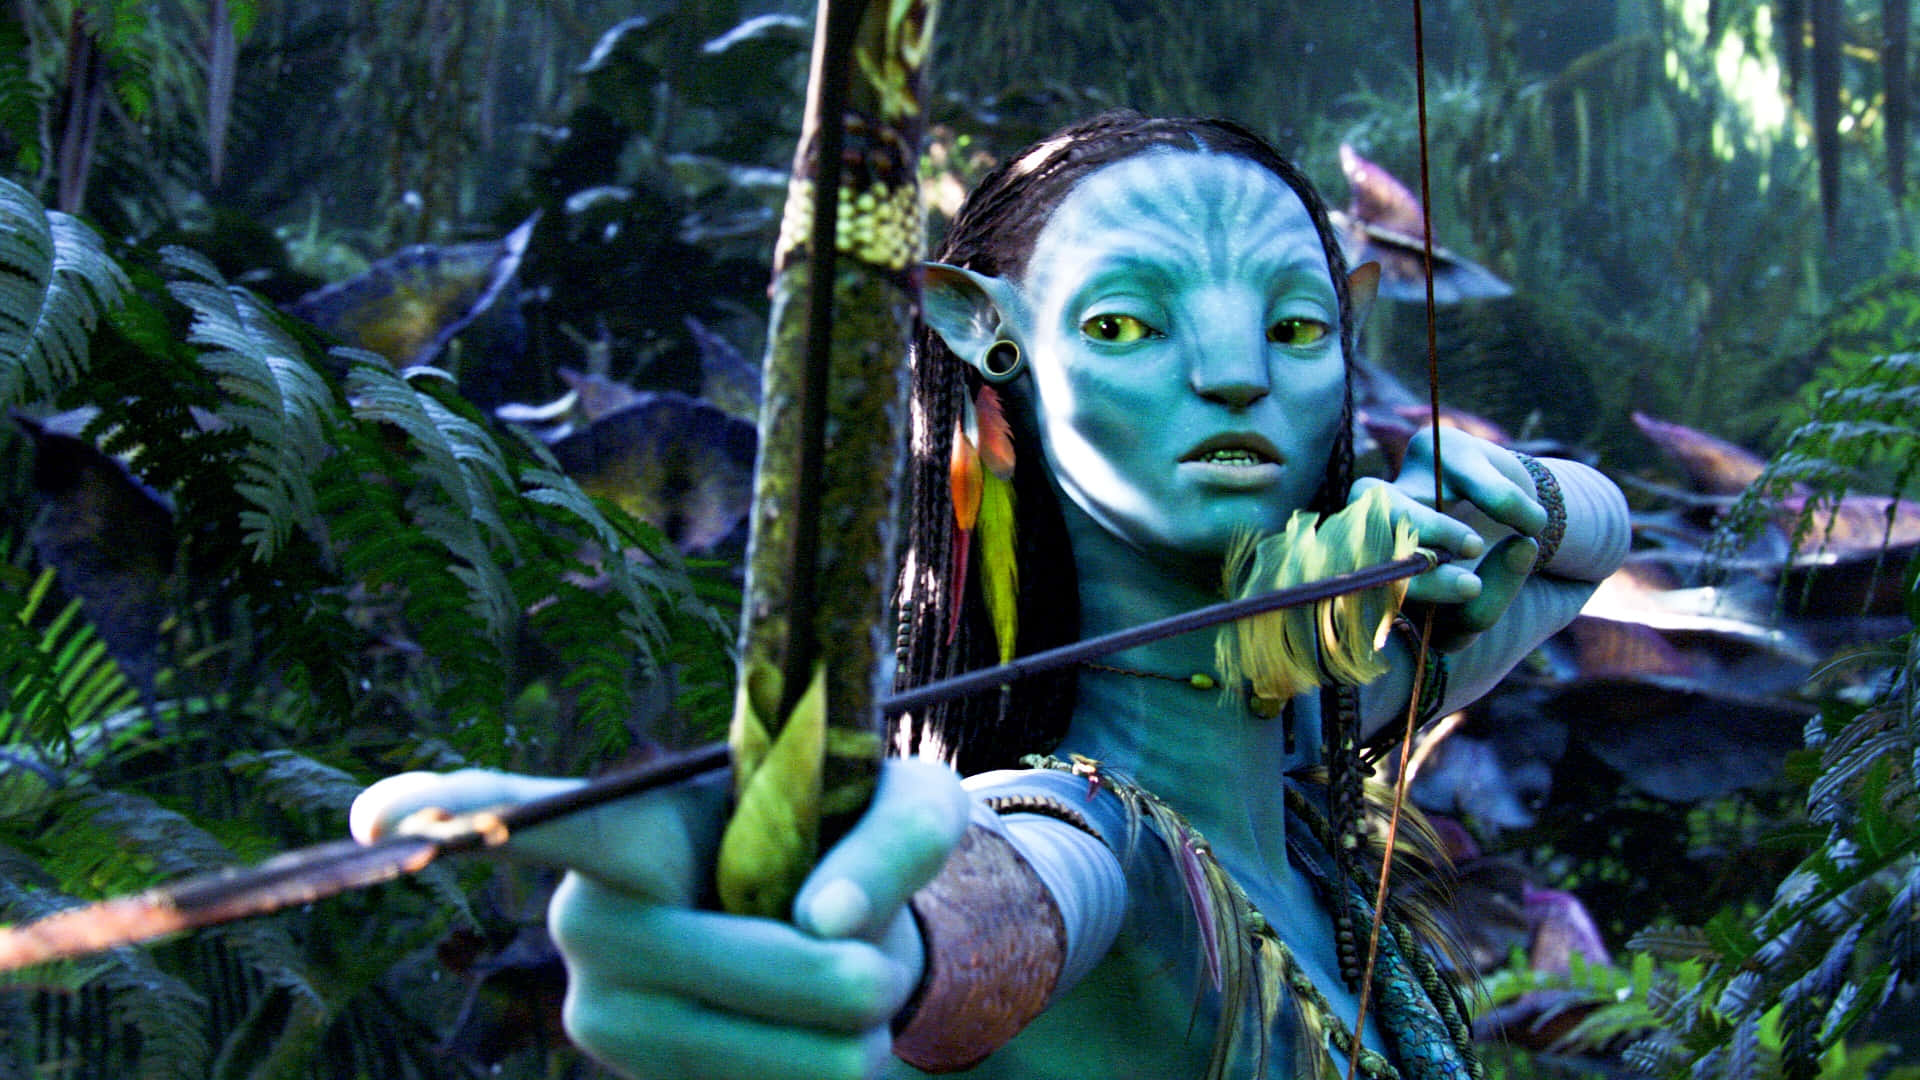 Hittadin Avatar I Den Frodiga Djungeln.